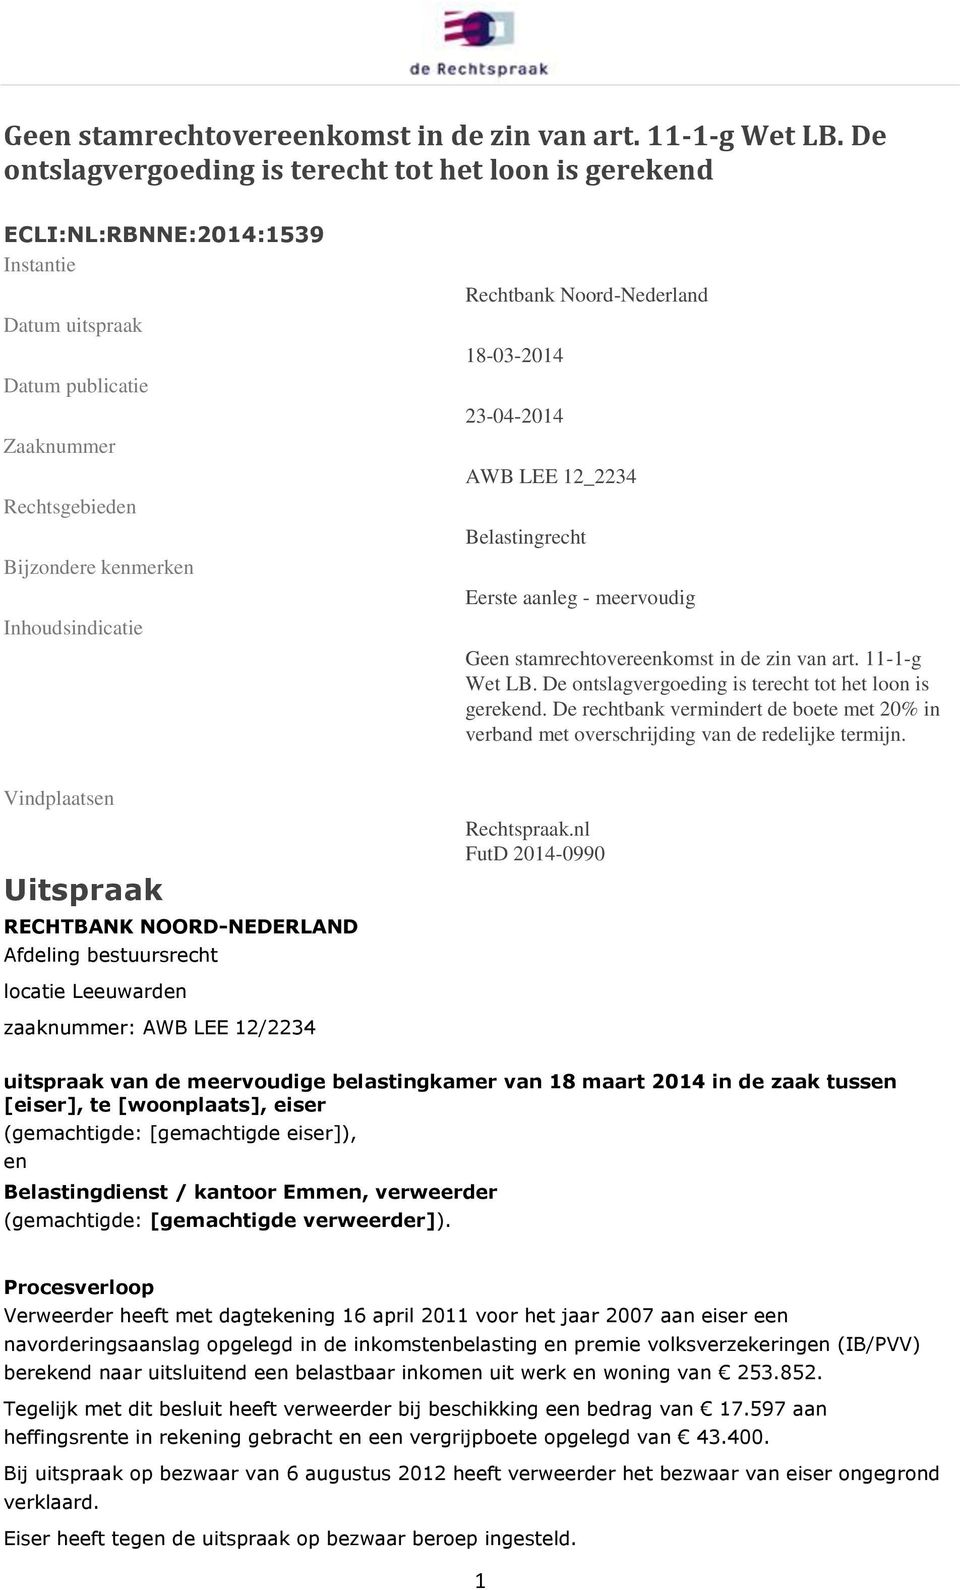 Noord-Nederland 18-03-2014 23-04-2014 AWB LEE 12_2234 Belastingrecht Eerste aanleg - meervoudig  De ontslagvergoeding is terecht tot het loon is gerekend.